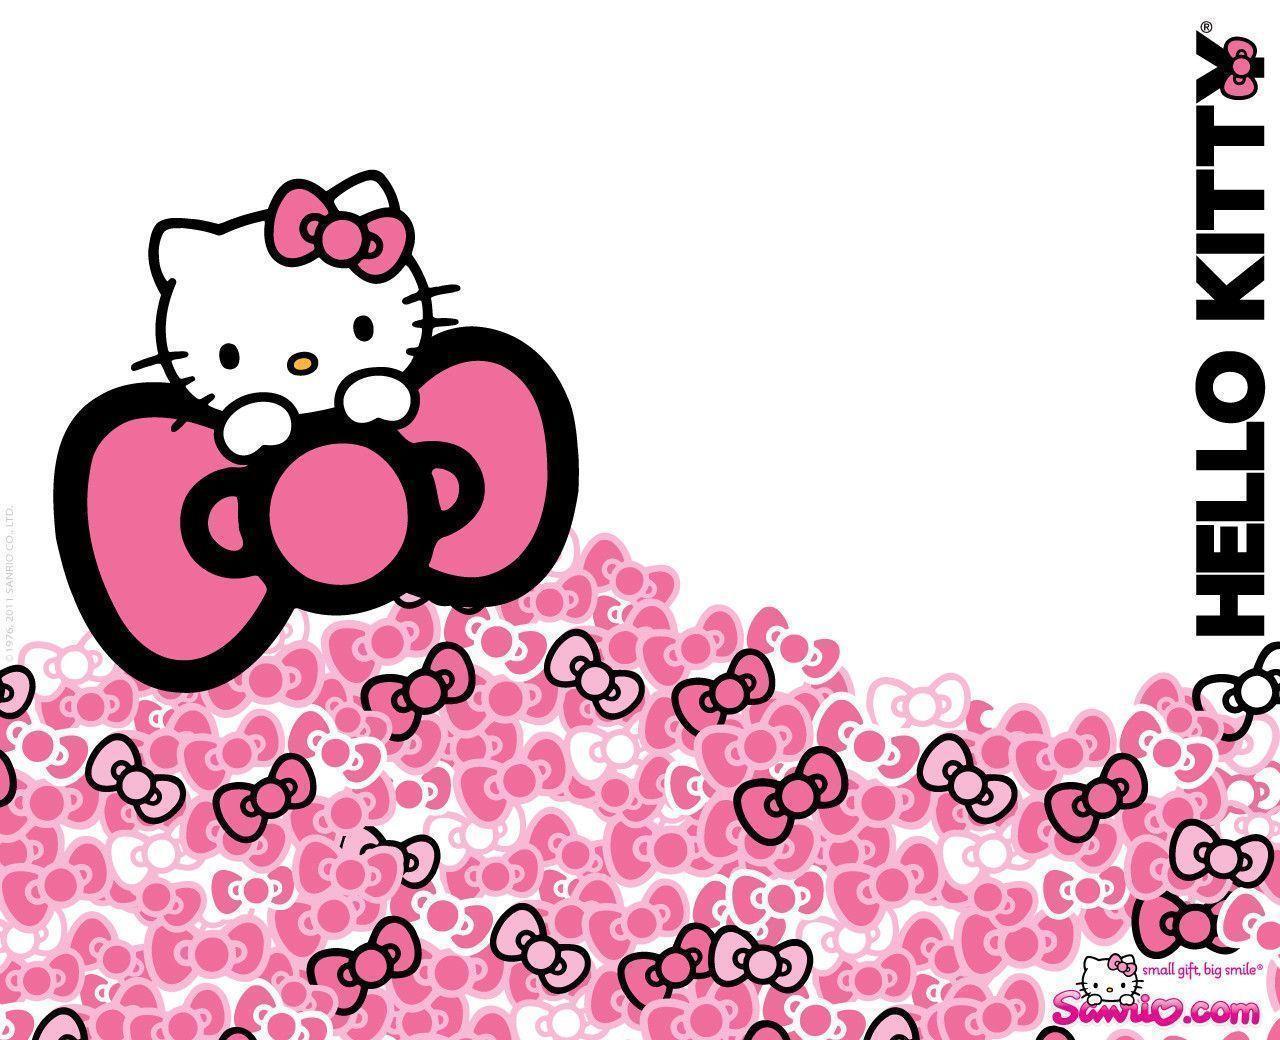 Hello Kitty Wallpaper from Sanrio Company. Hello Kitty Wallpaper